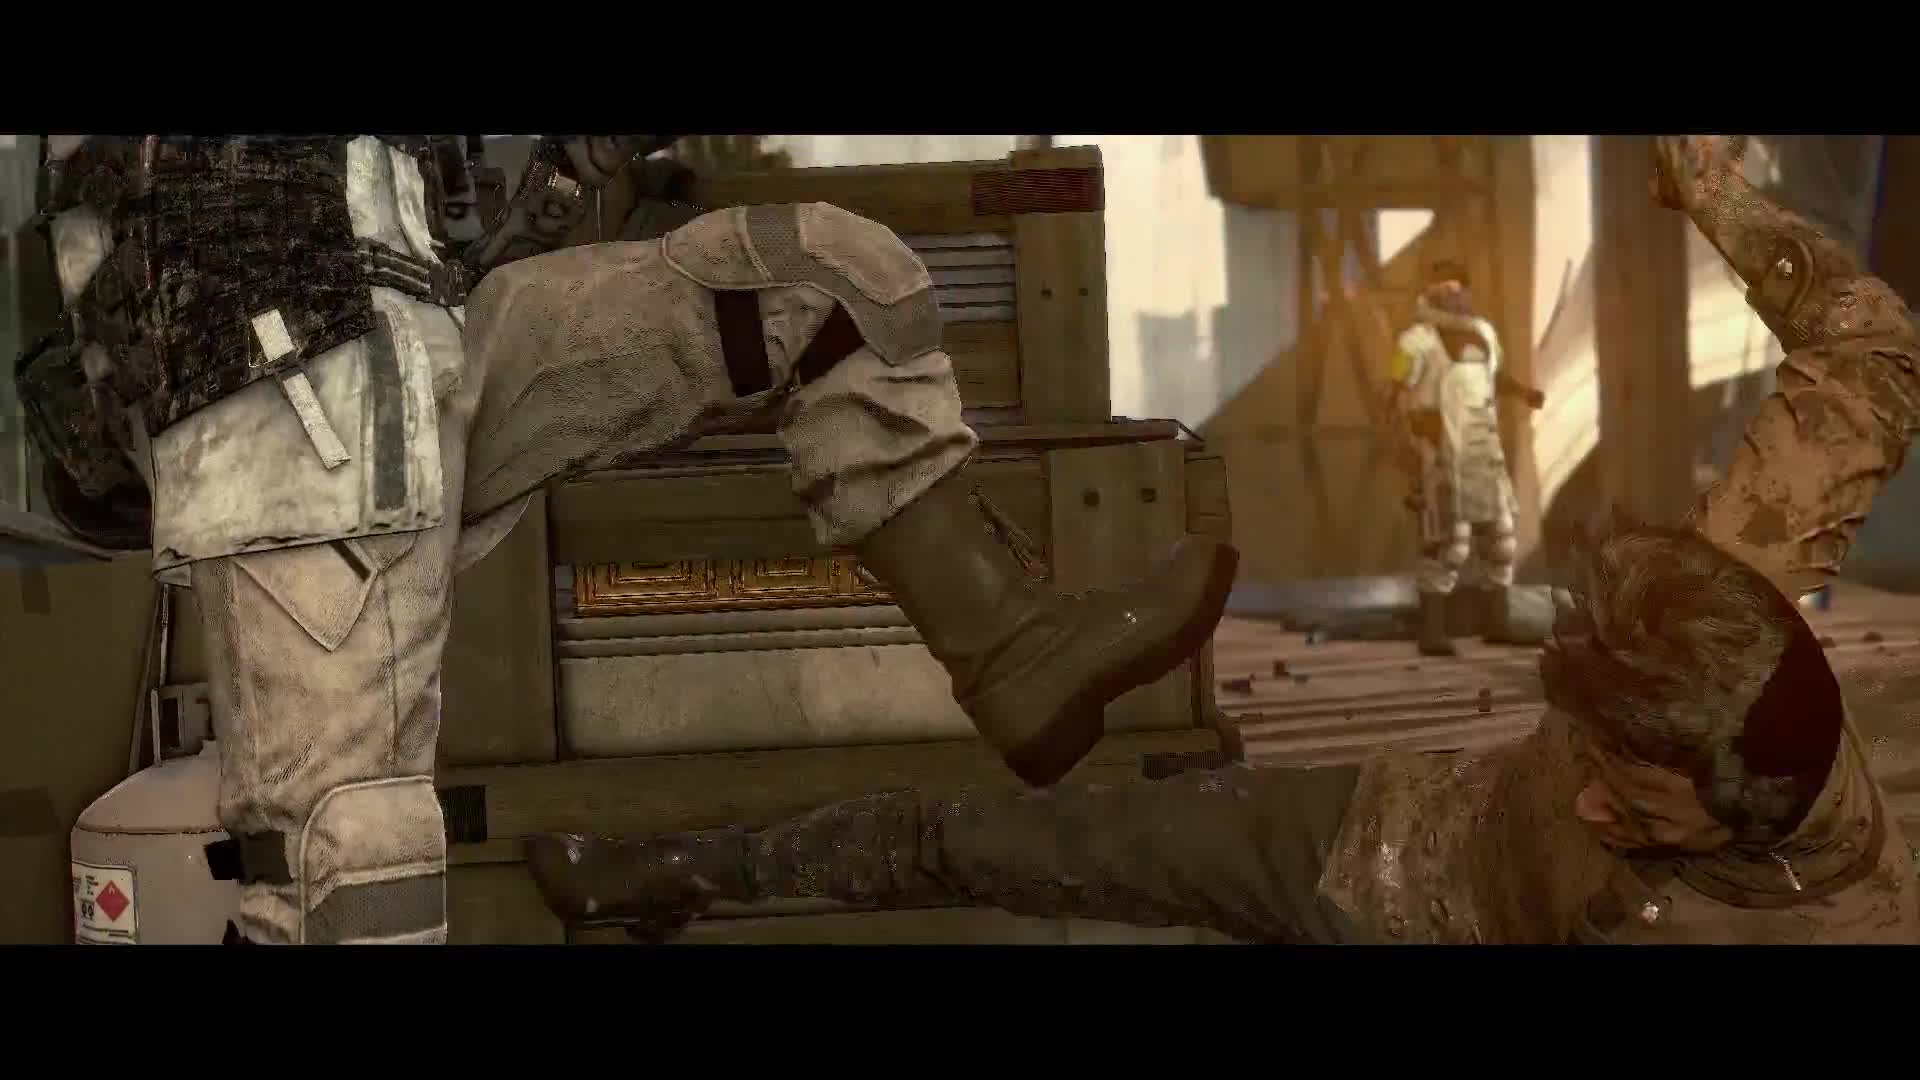 Deus Ex: Mankind Divided - Adam Jensen 2.0 Trailer